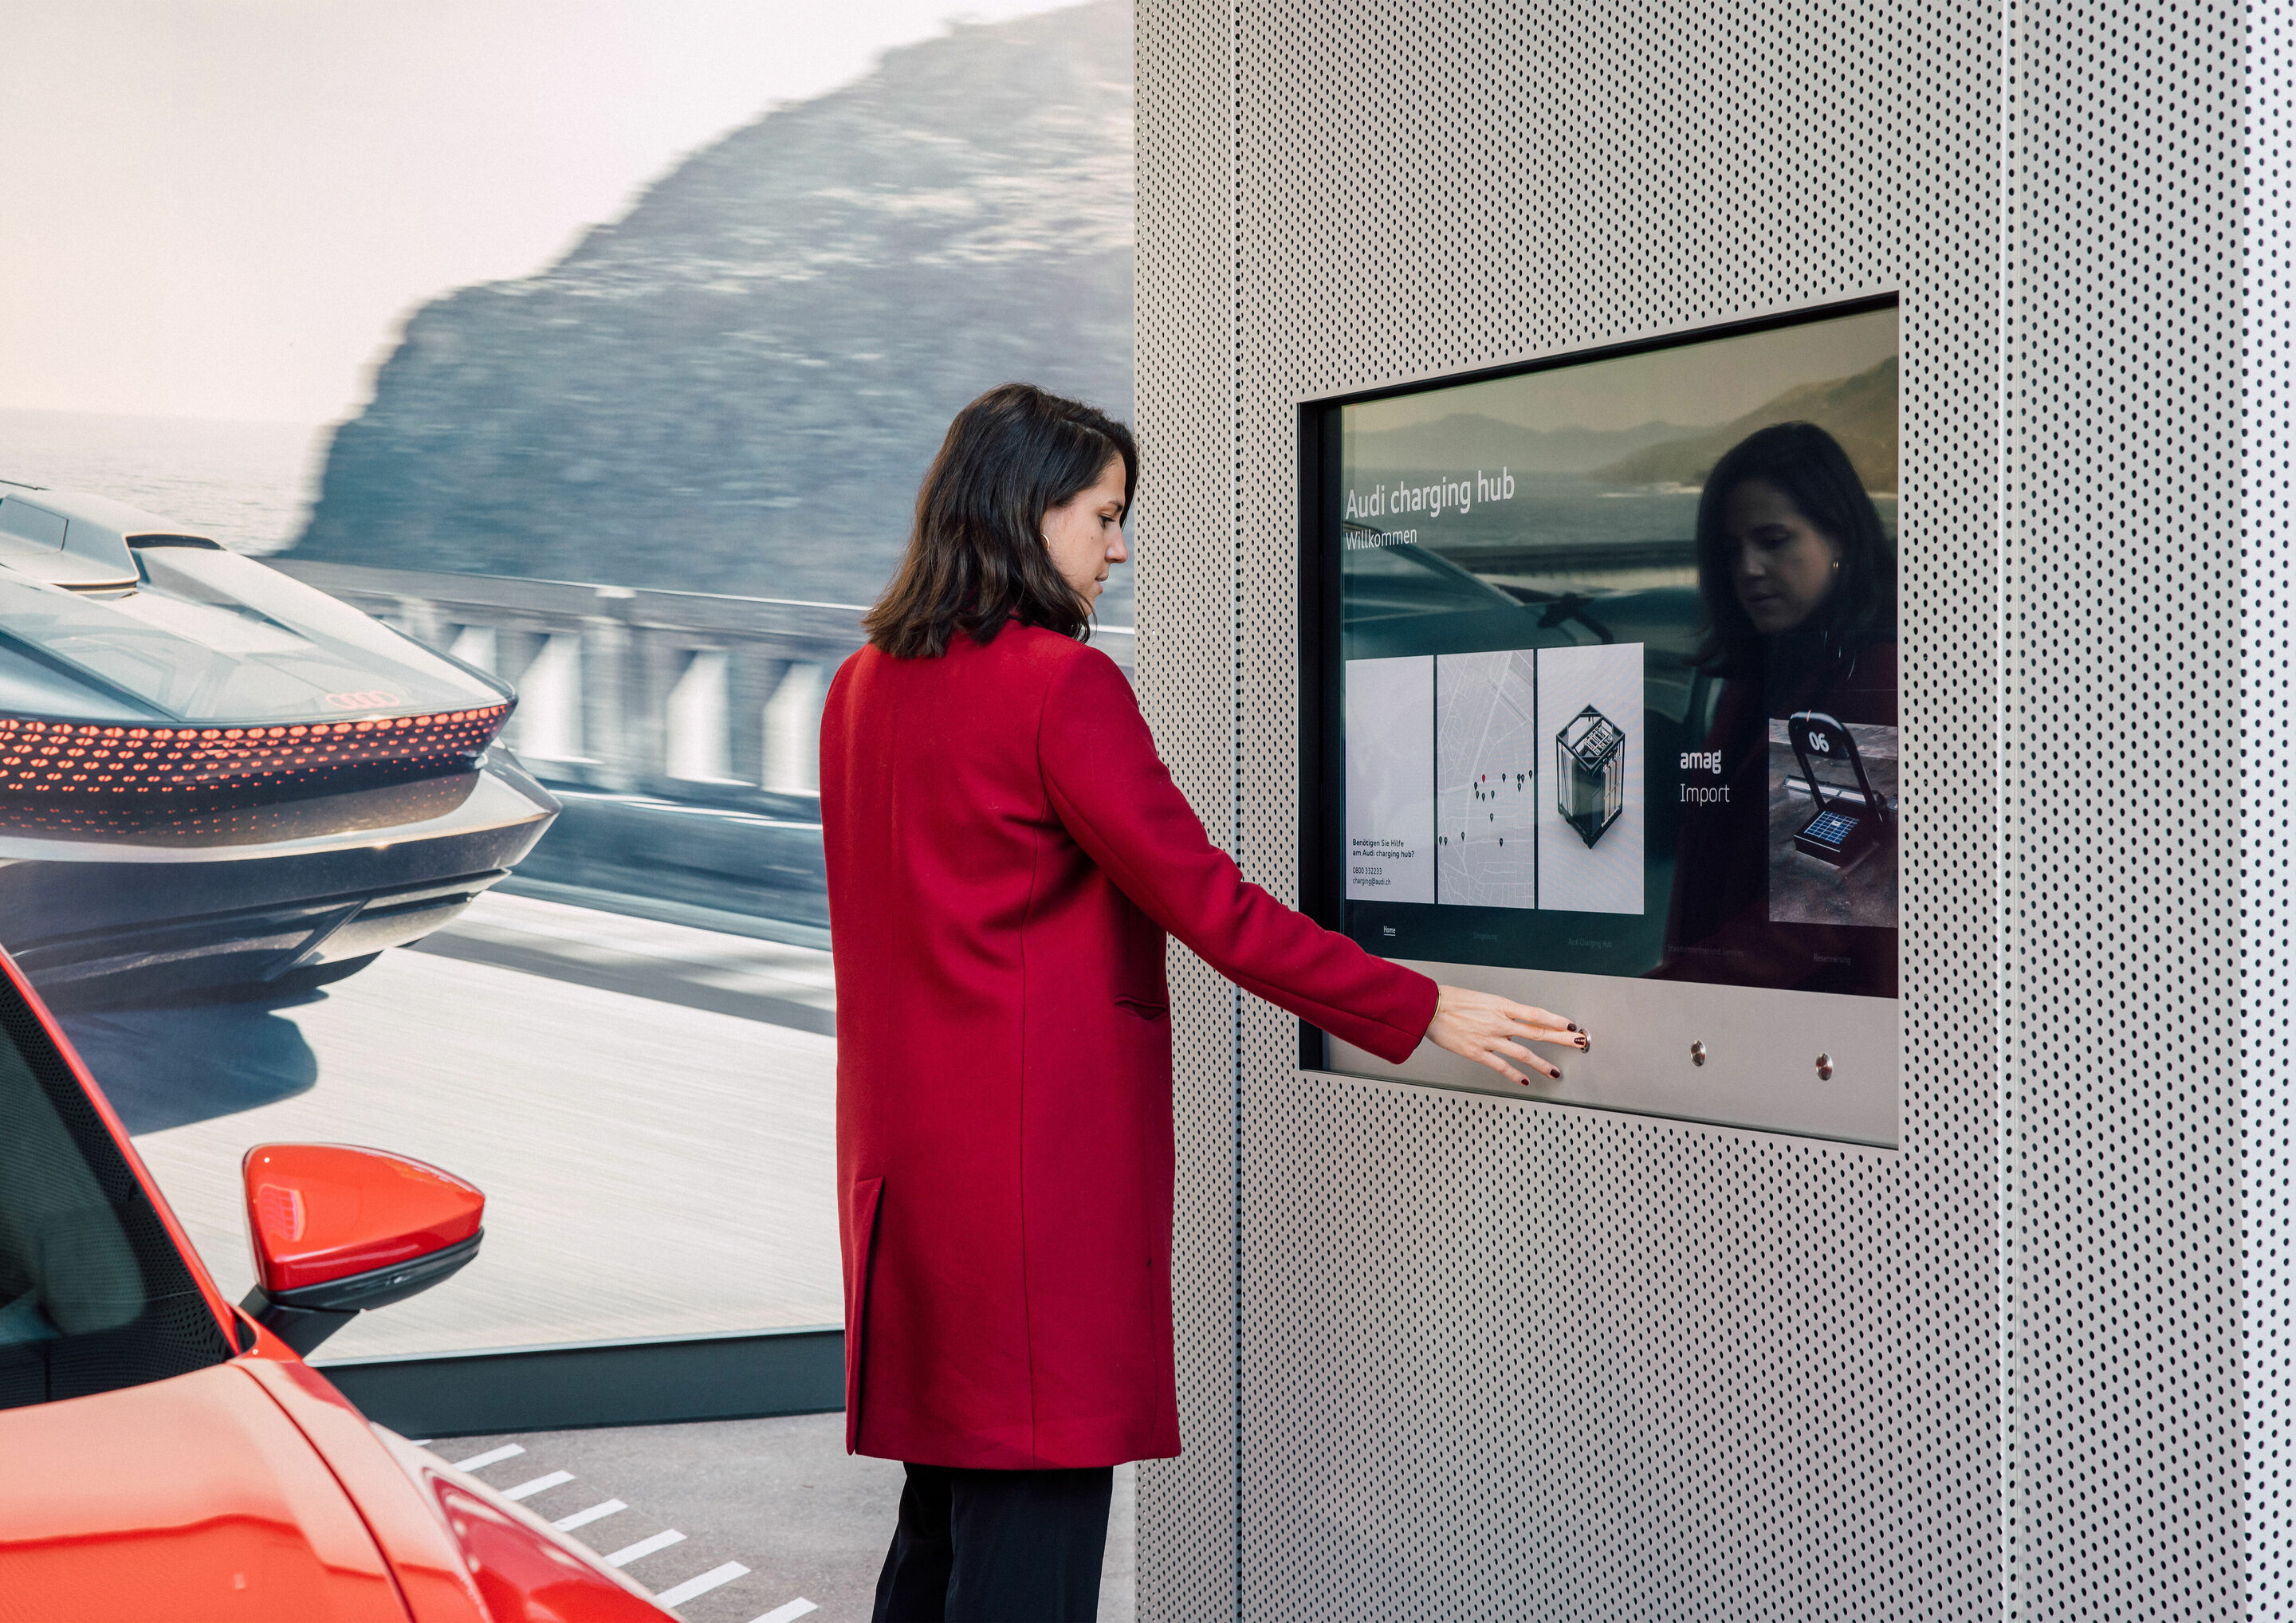 Elektrisierendes Opening des ersten Audi charging hub in Zürich